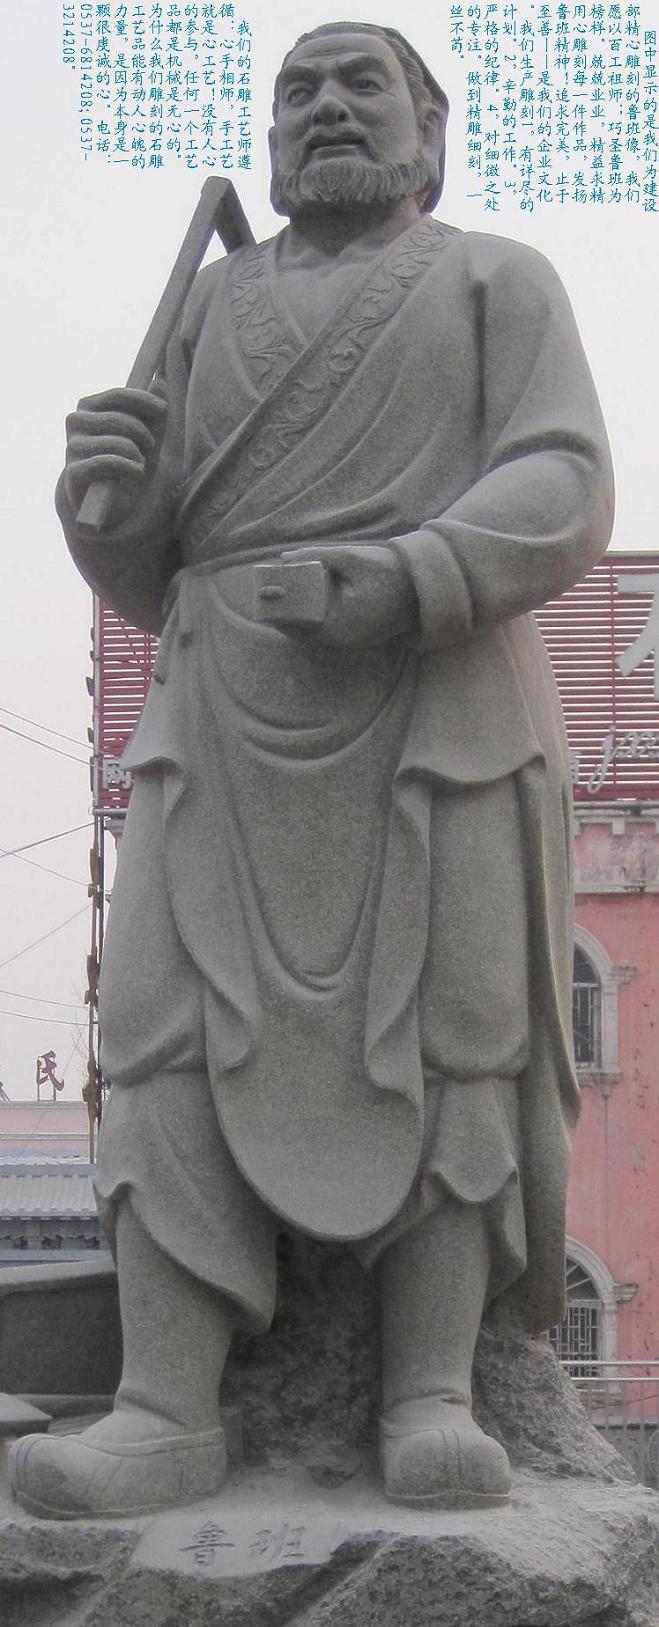 鲁班雕像福禄寿石雕寿星财神，石雕